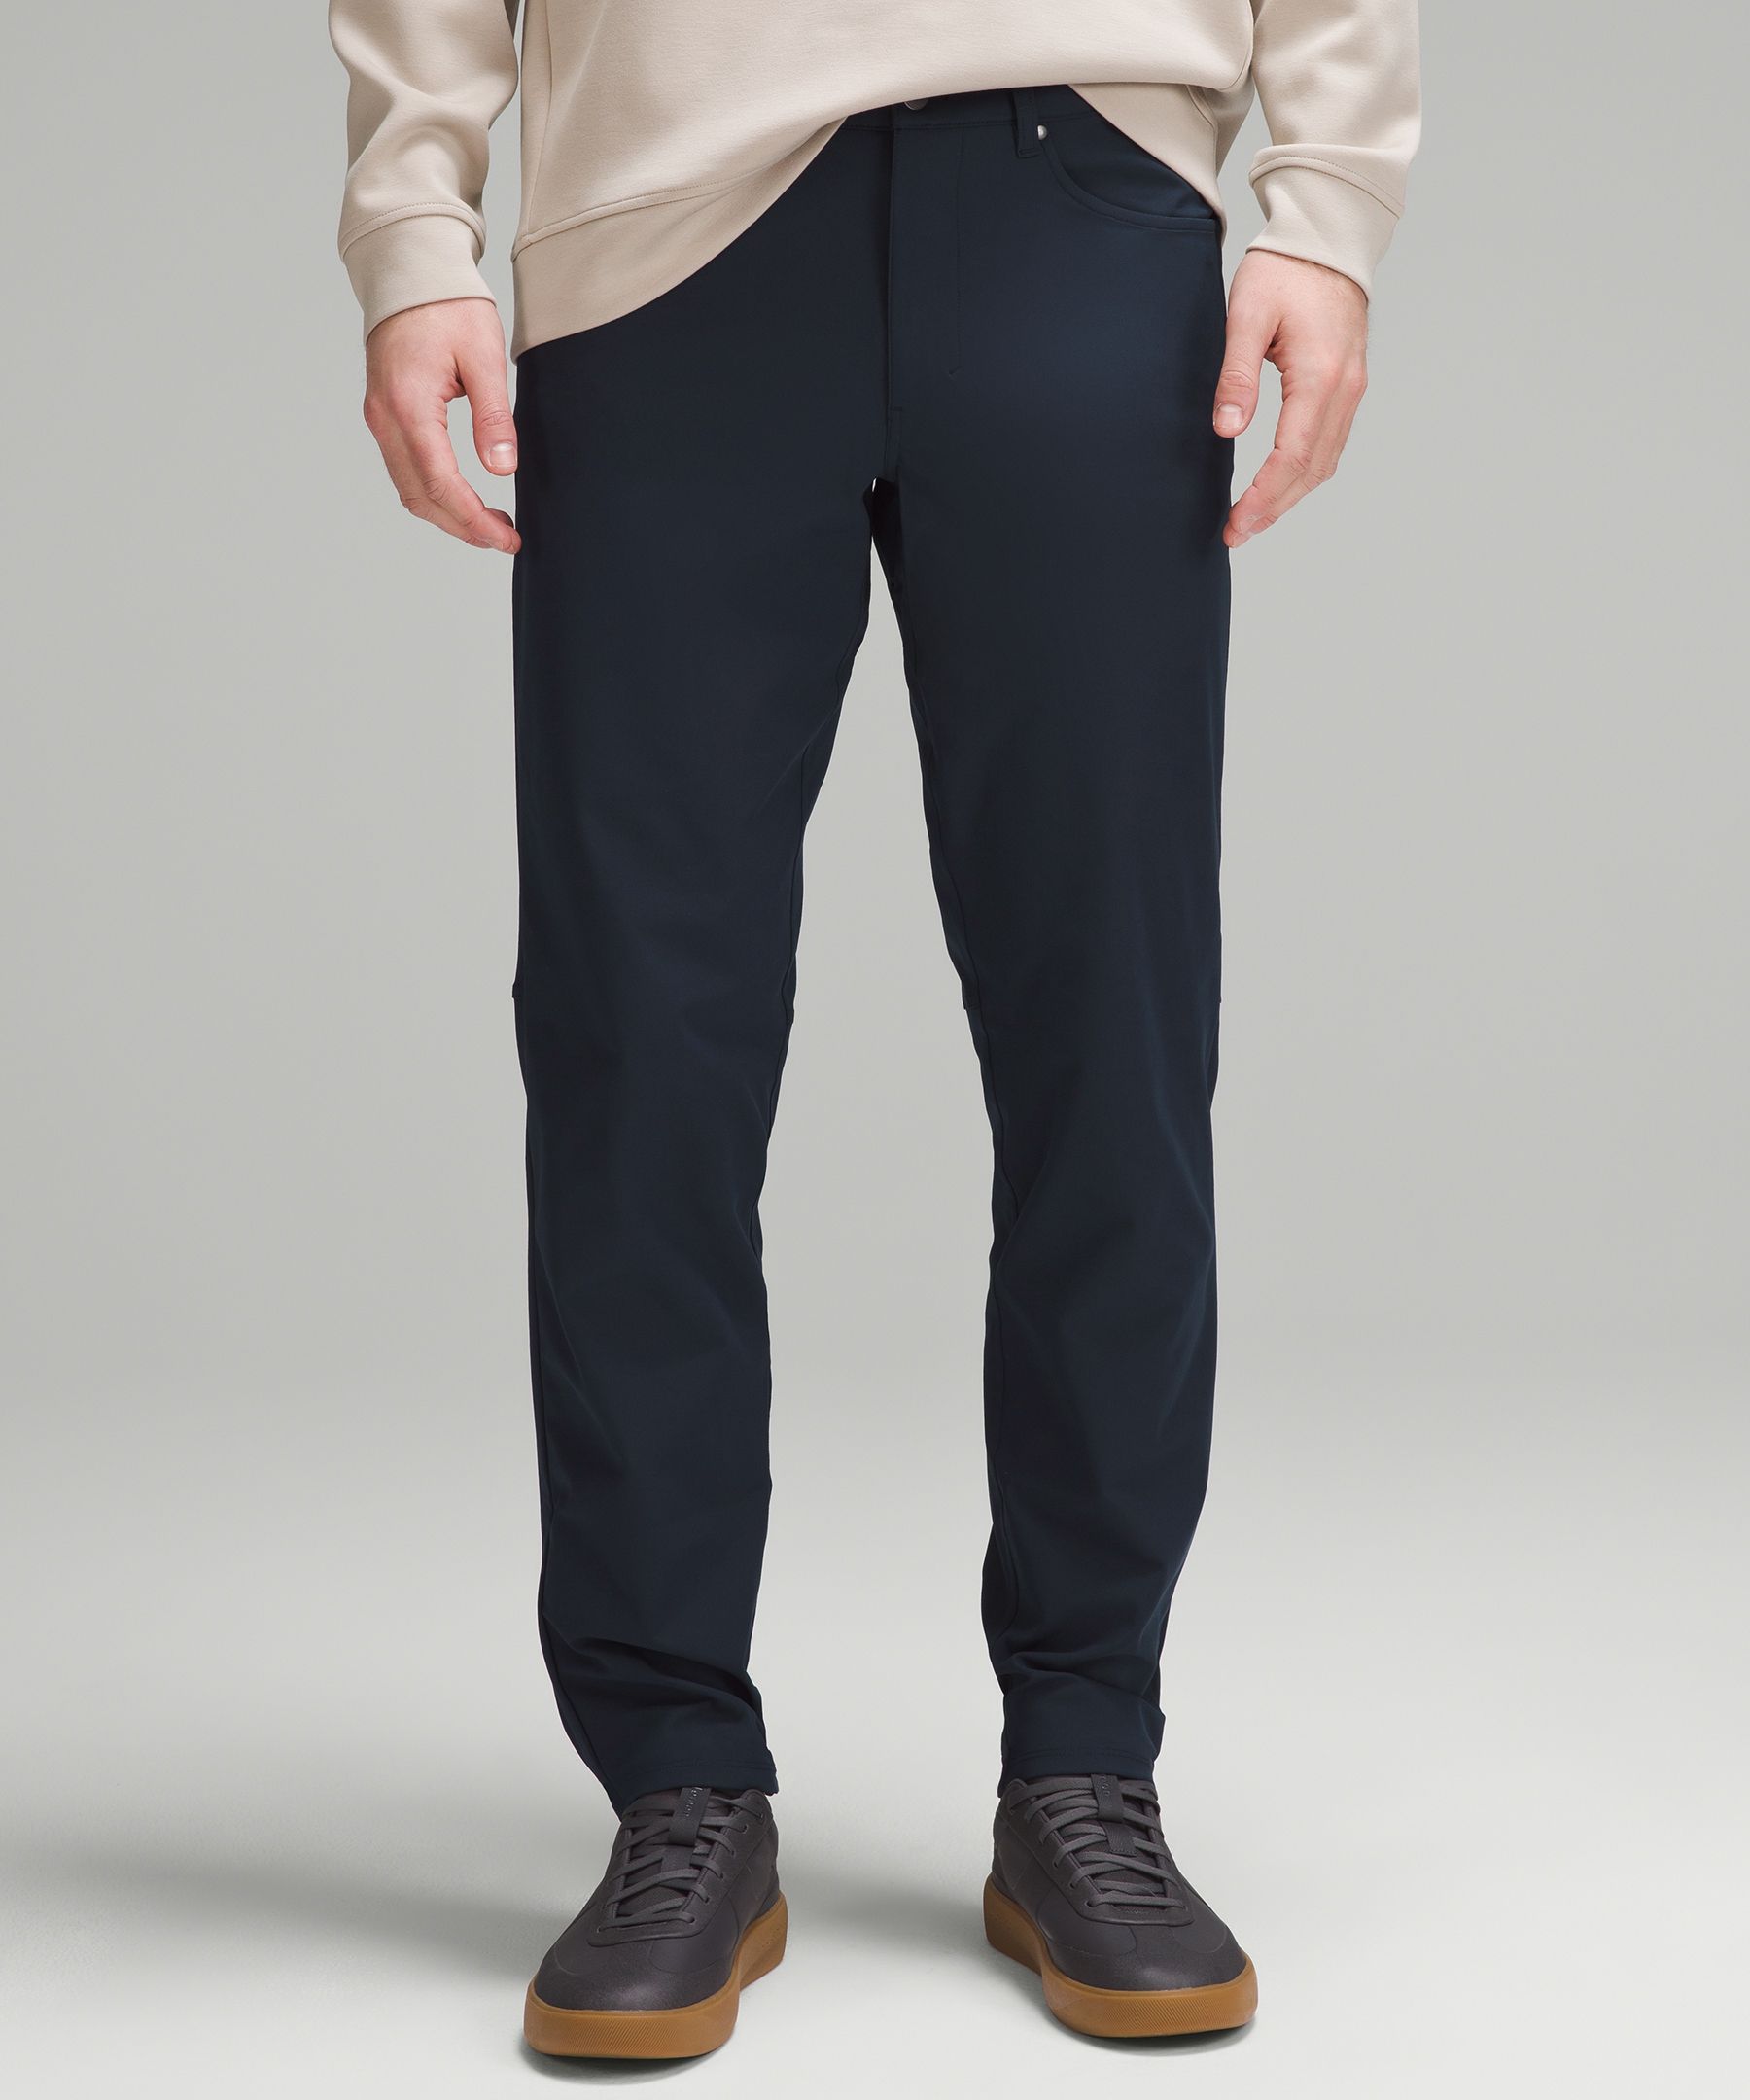 men's lululemon pants sale